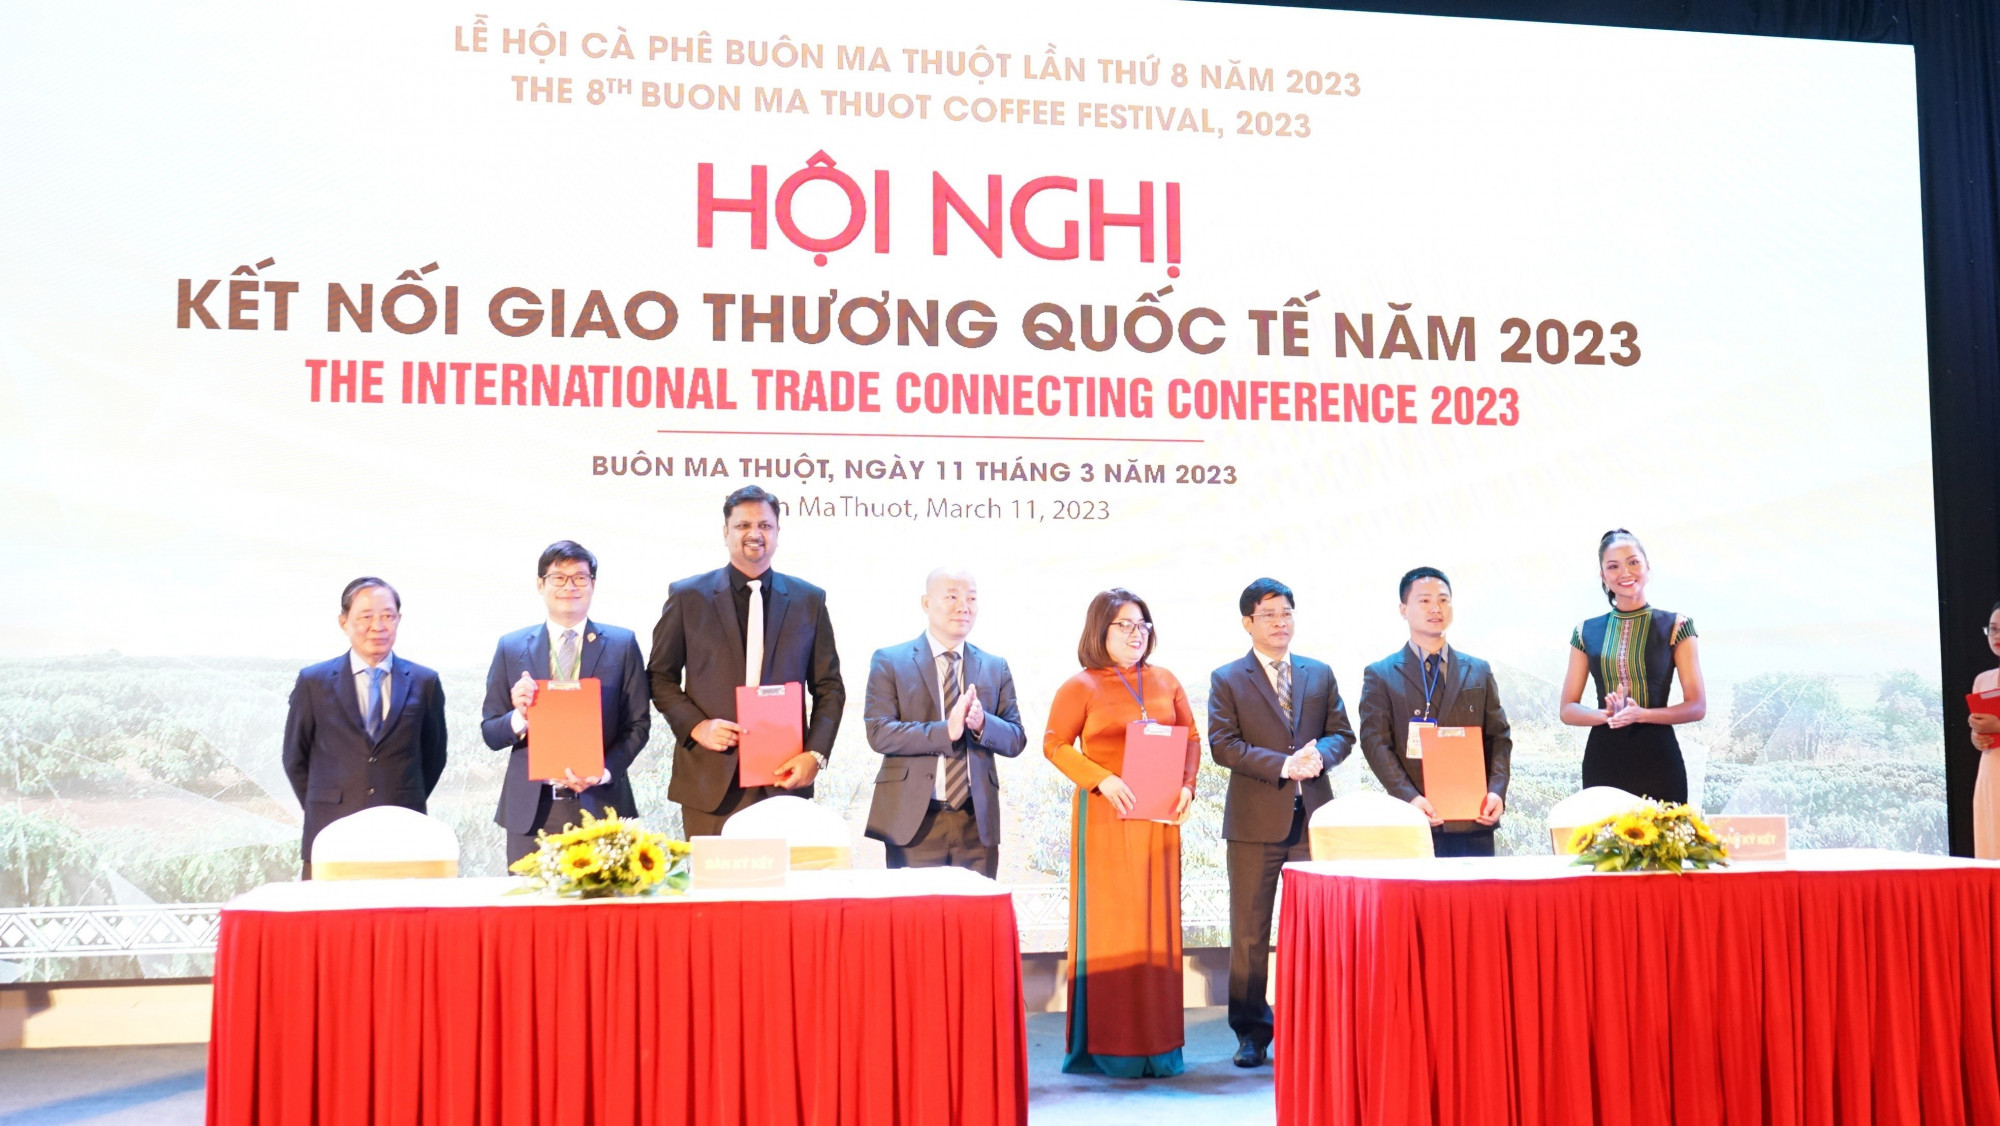  ại hội nghị, các công ty chế biến, xuất khẩu cà phê của tỉnh Đắk Lắk đã có 9 ký kết biên bản ghi nhớ, hợp tác với các đối tác thuộc tập đoàn, công ty đa quốc gia. 